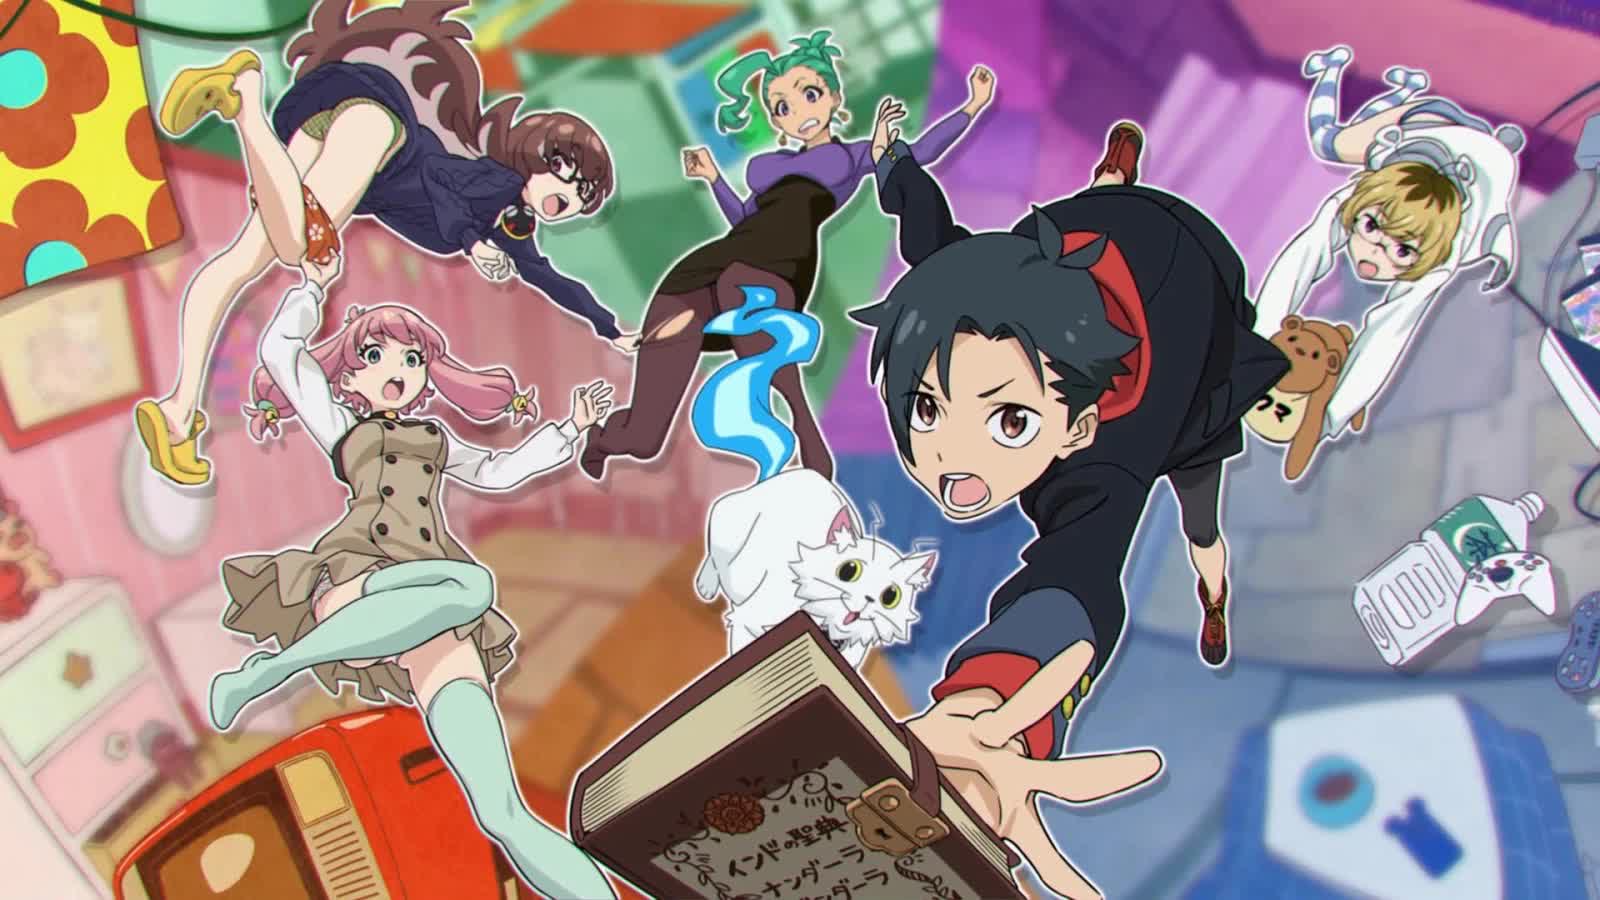 7 bộ anime có nội dung kỳ quặc cho những người có sở thích kỳ lạ - Ảnh 3.